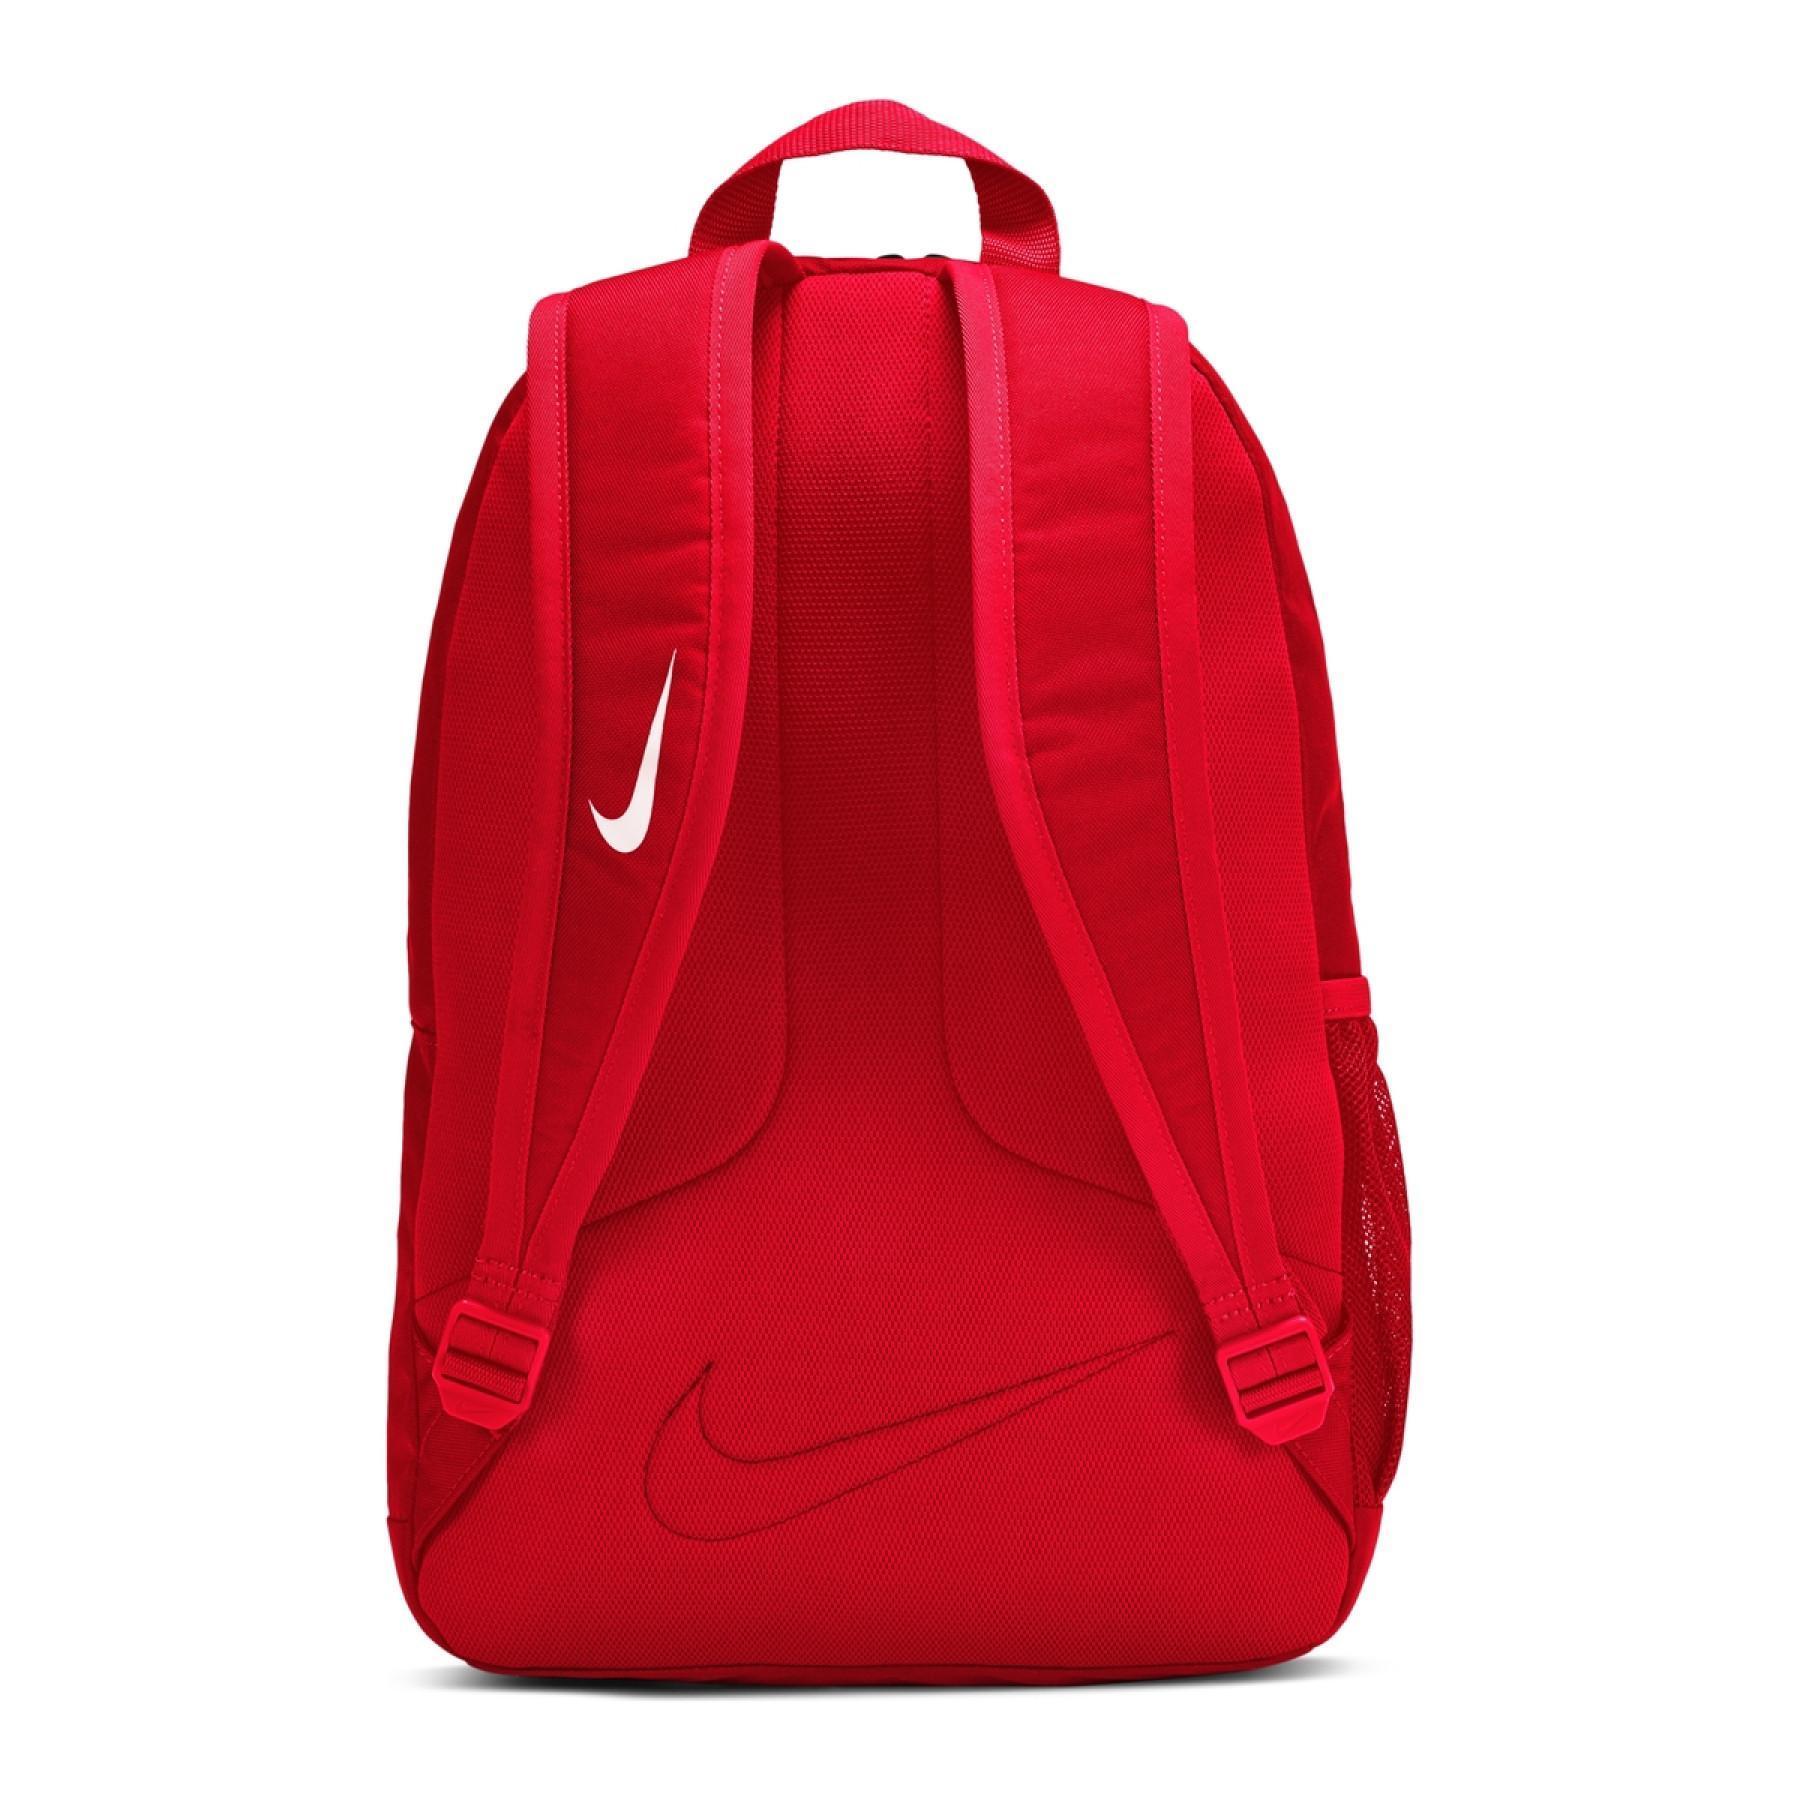 Plecak dla dzieci Nike Academy Team